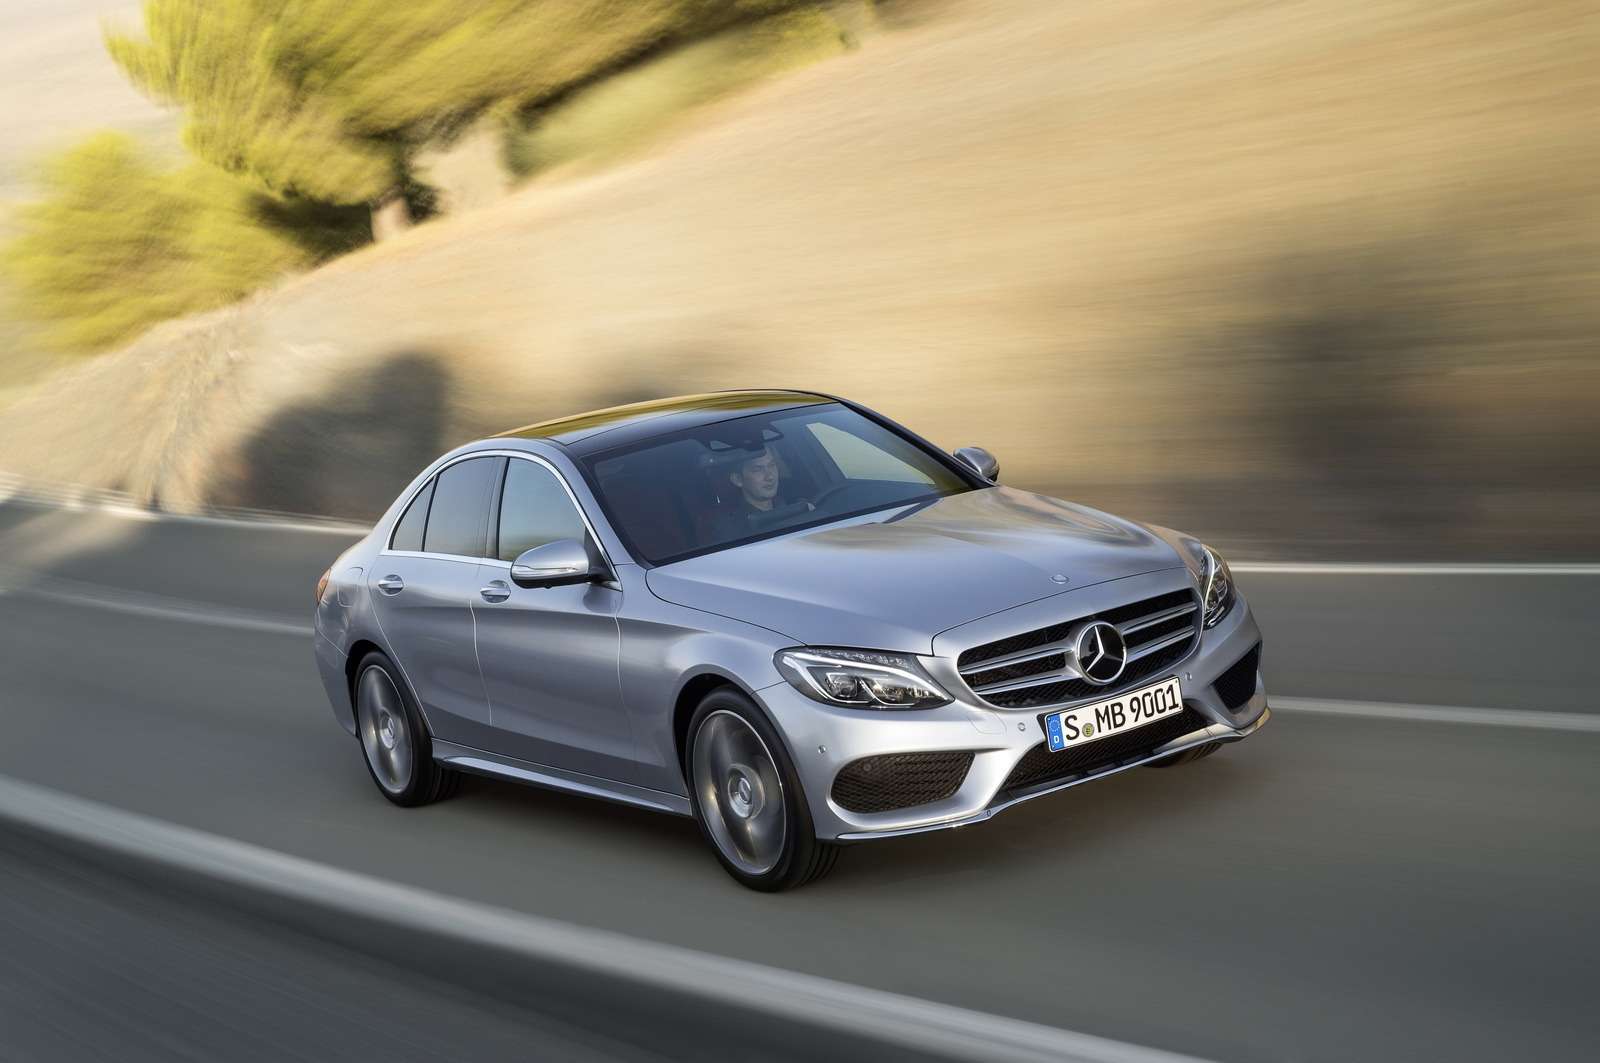 Mercedes-Benz C-класса. Цена полноприводных версий: 2 460 000 – 3 560 000 рублей. Двигатели: бензиновые 2.0, 3.0 (184 и 367 л.с.), дизельные 2.2 (204 л.с.) Трансмиссия: 7-ступенчатый автомат.